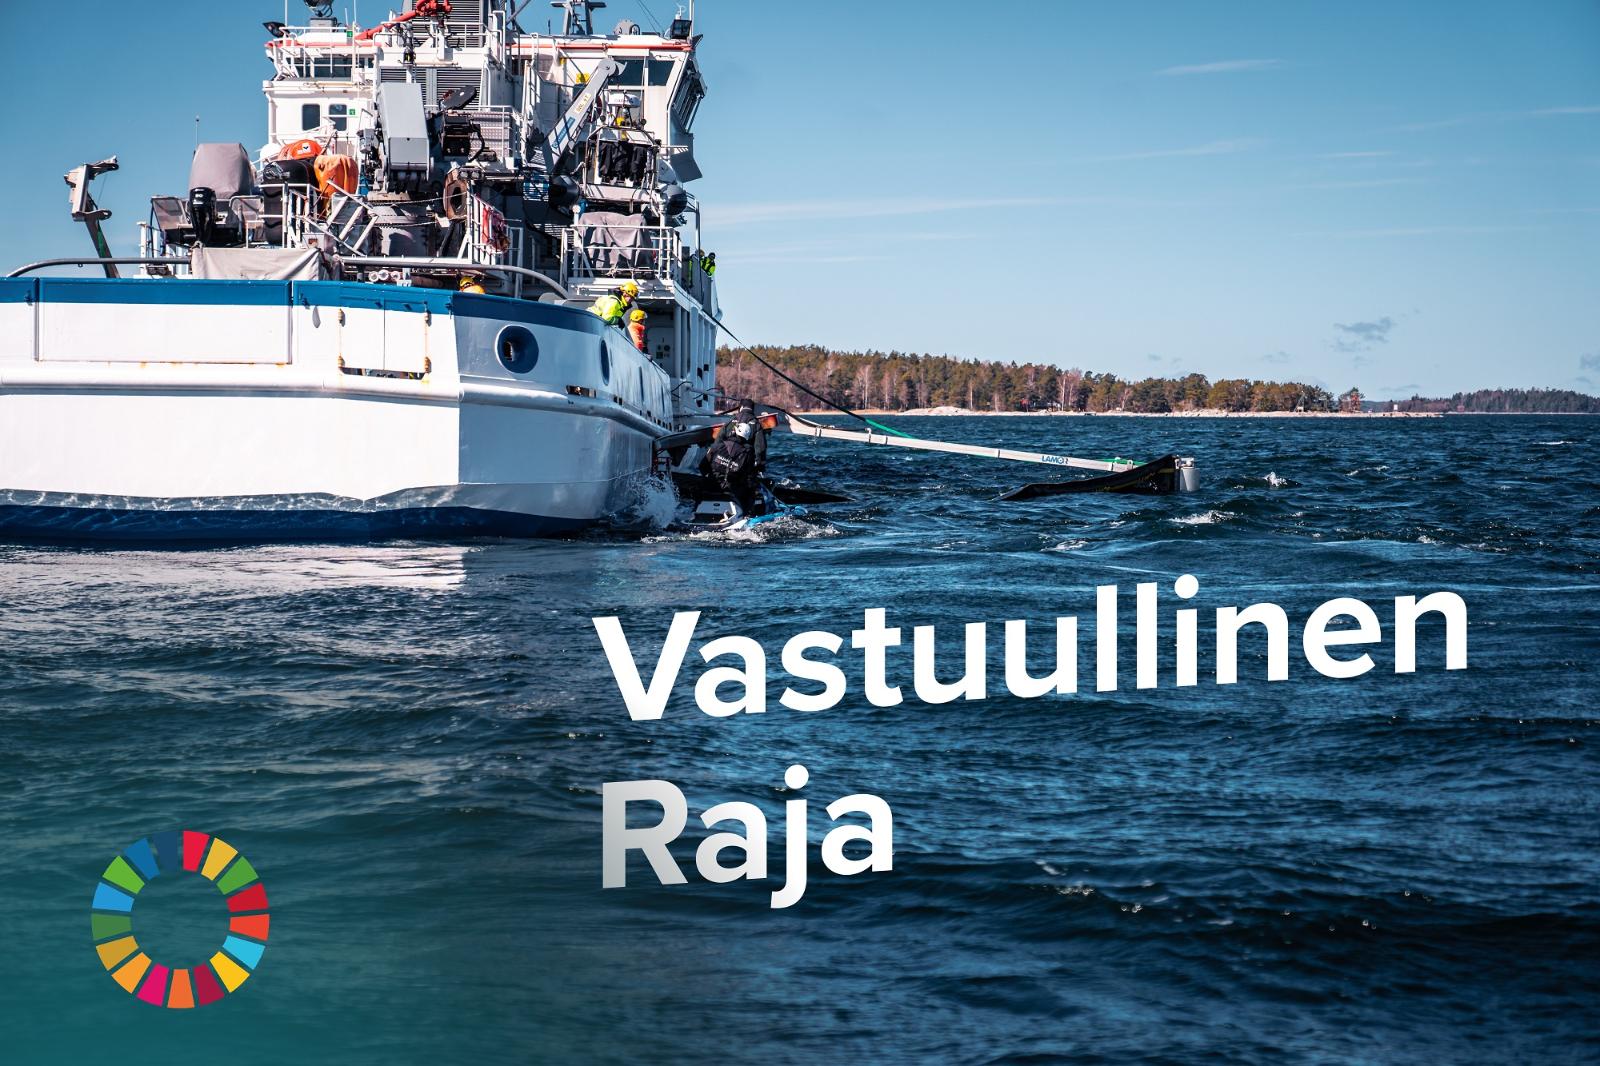 Valkoinen vene kesällä merellä, vieressä öljyntorjuntapuomia. Kuvassa teksti vastuullinen raja ja kestävän kehityksen logo.